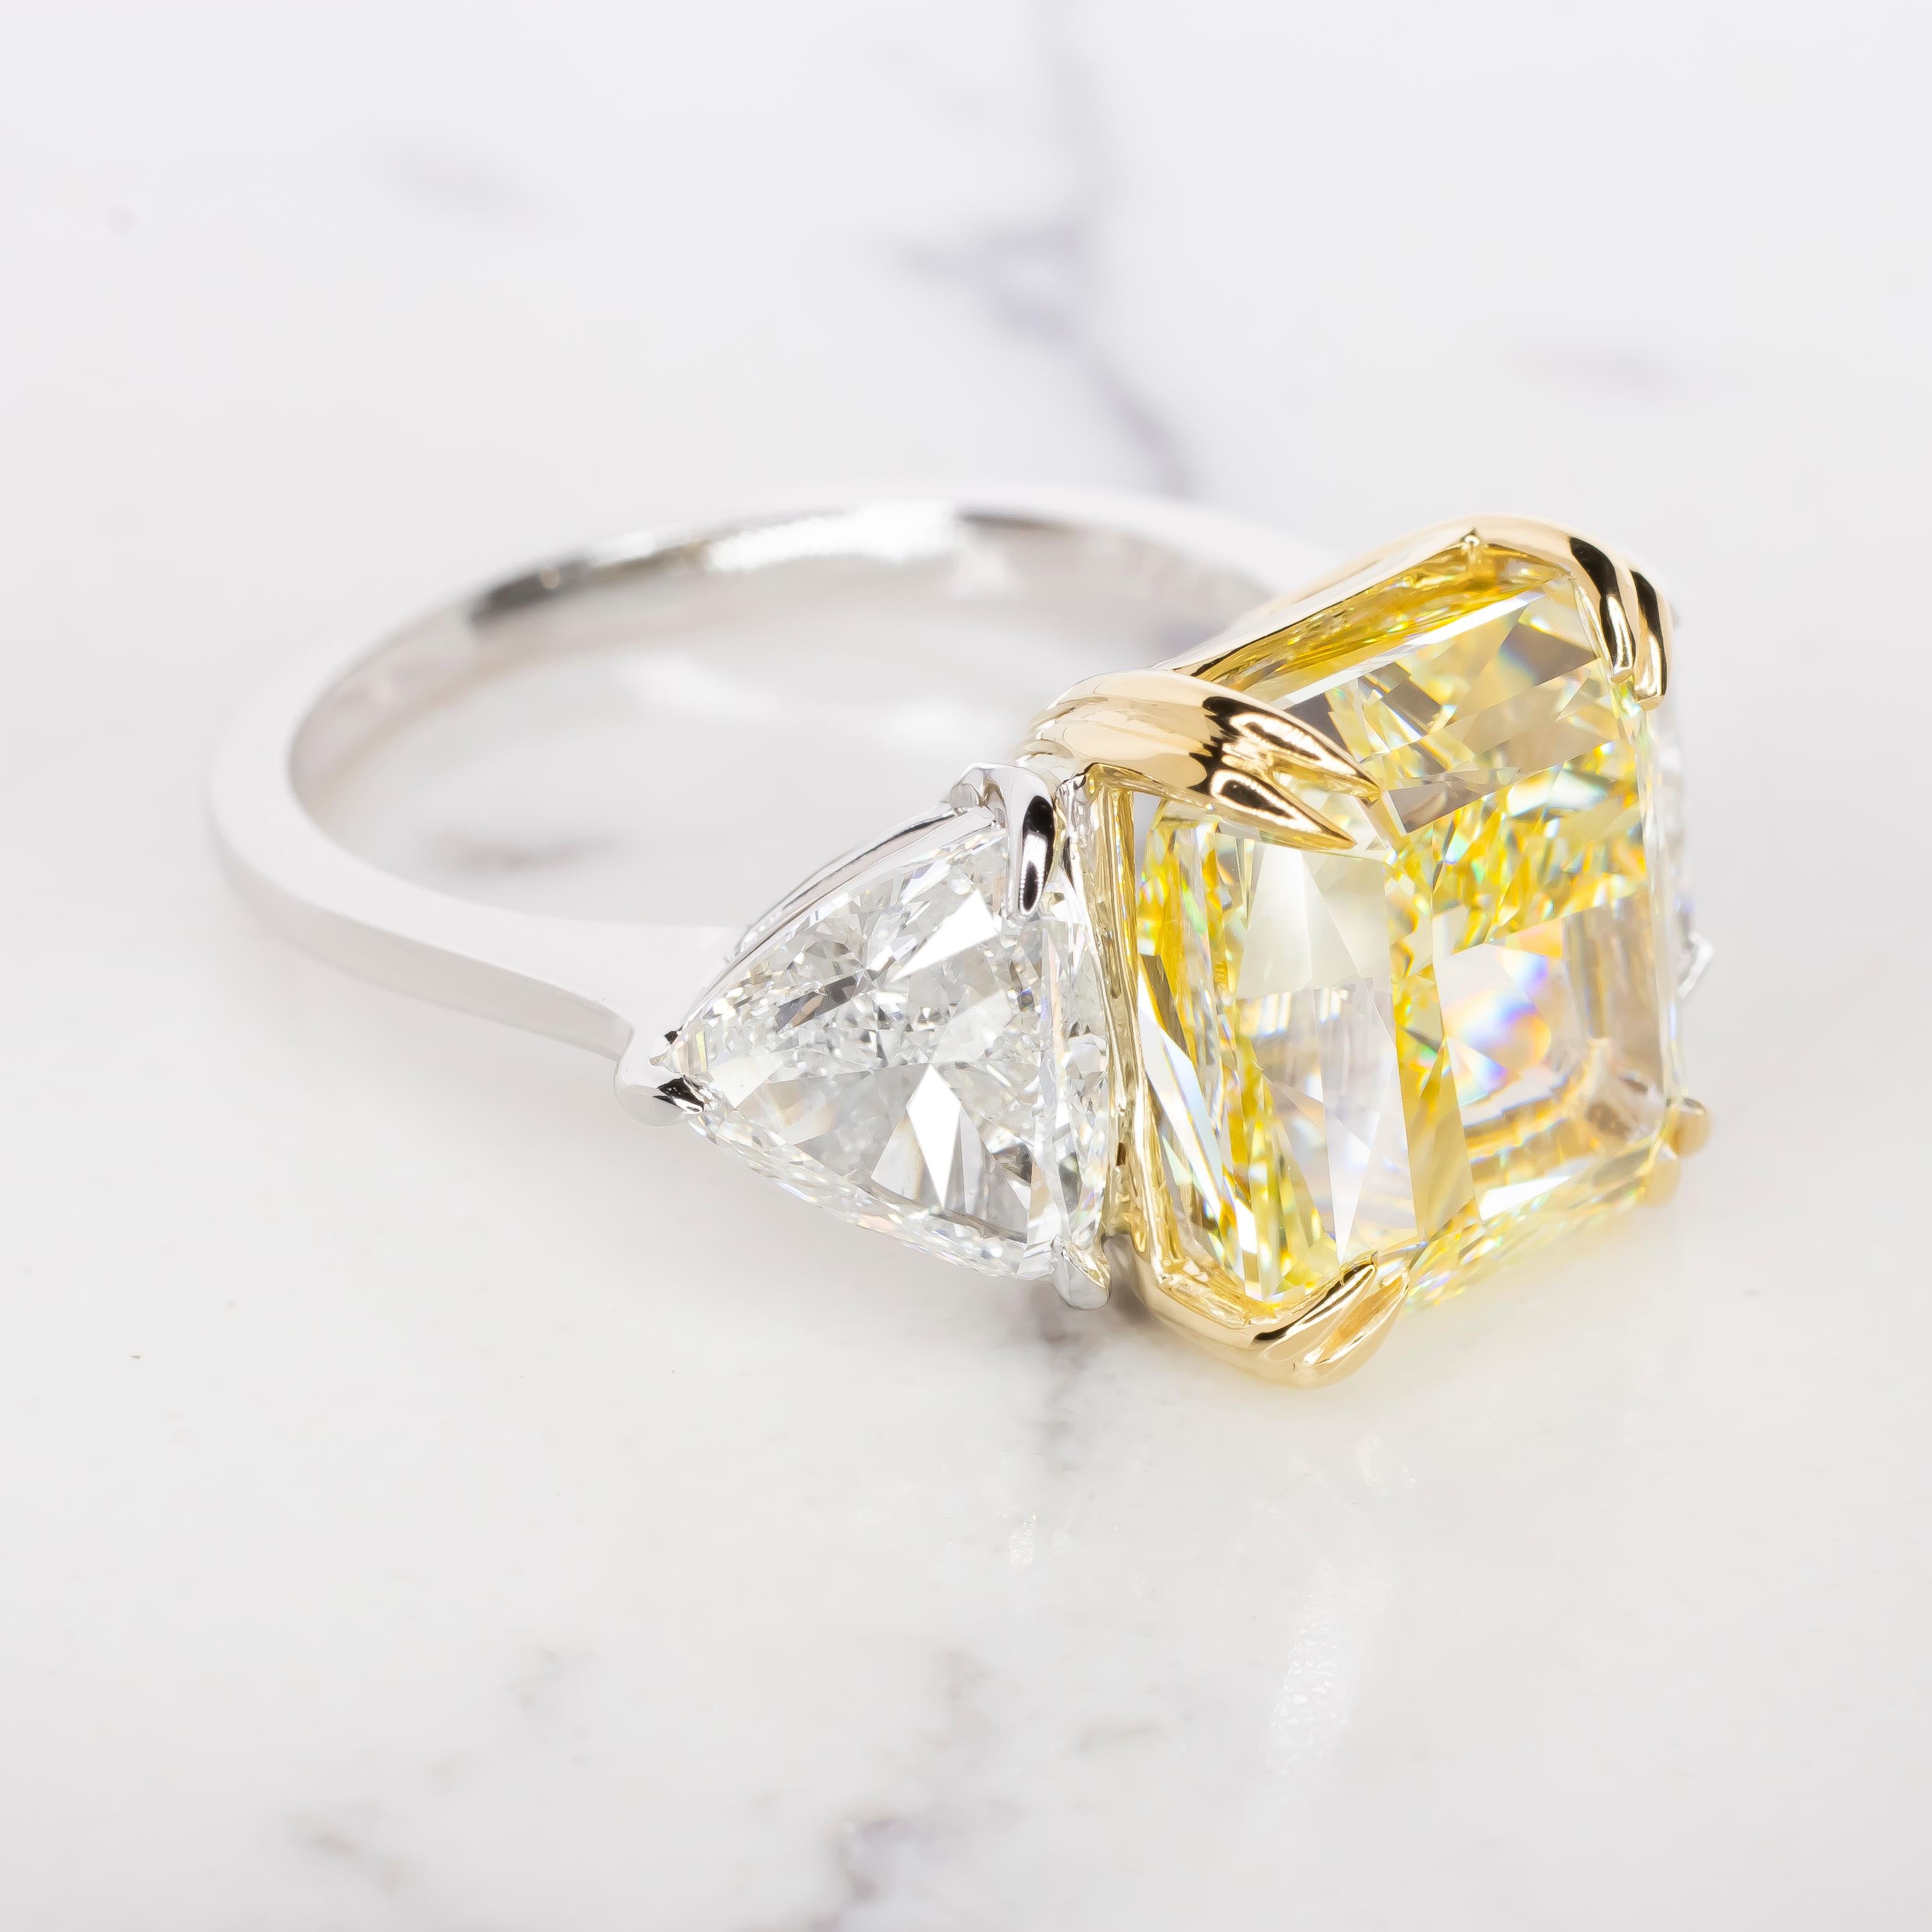 Dieser GIA-zertifizierte 10,57-karätige gelbe Fancy-Diamantring mit Billionenschliff-Diamanten strahlt unvergleichliche Eleganz und Raffinesse aus. Im Herzen dieses außergewöhnlichen Rings glänzt ein fancy-gelber Diamant, der vom renommierten